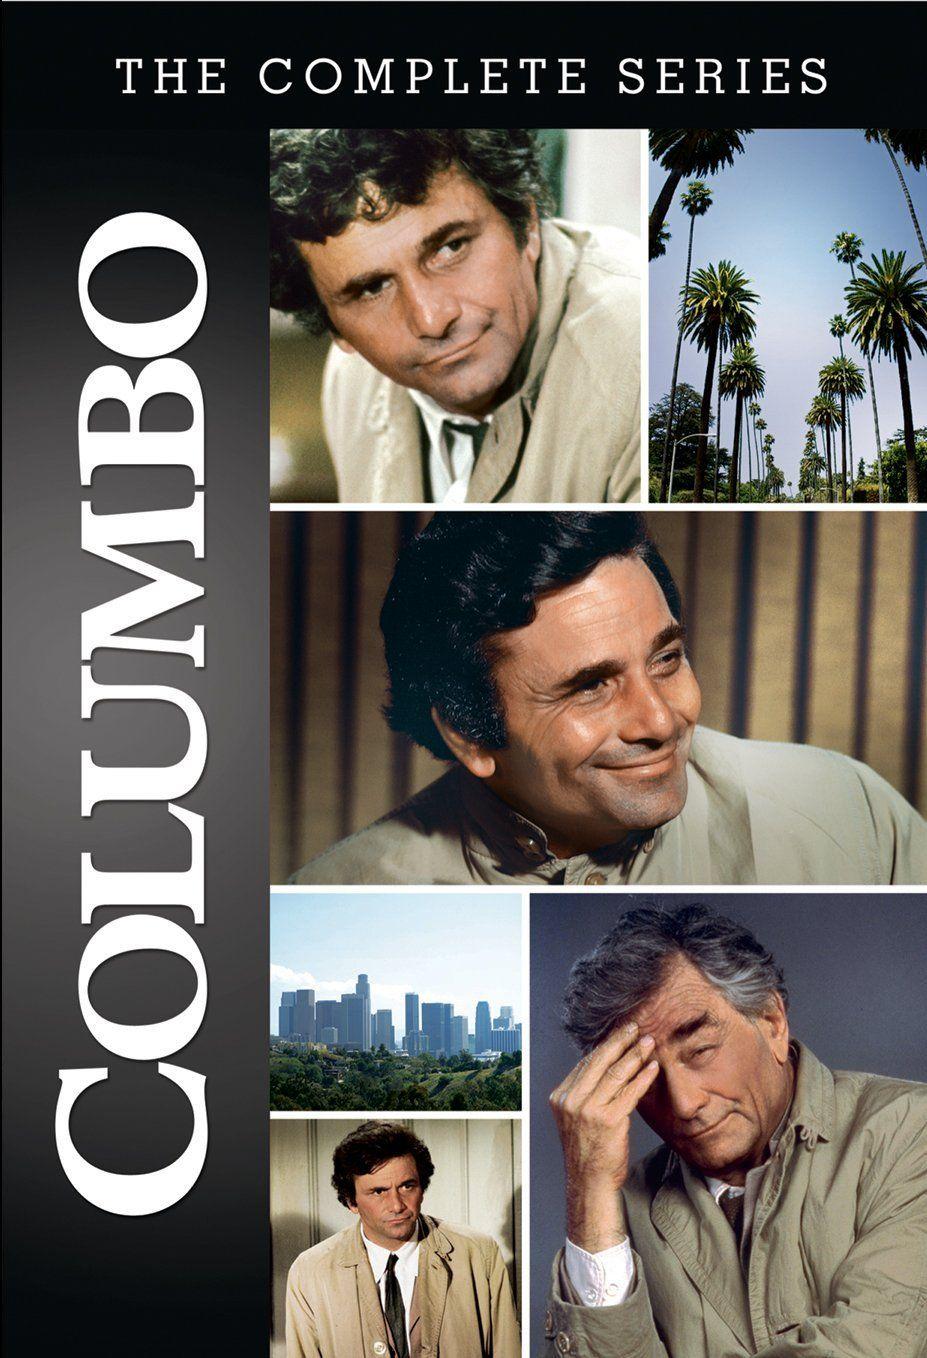 Columbo (TV Series 1971–2003)